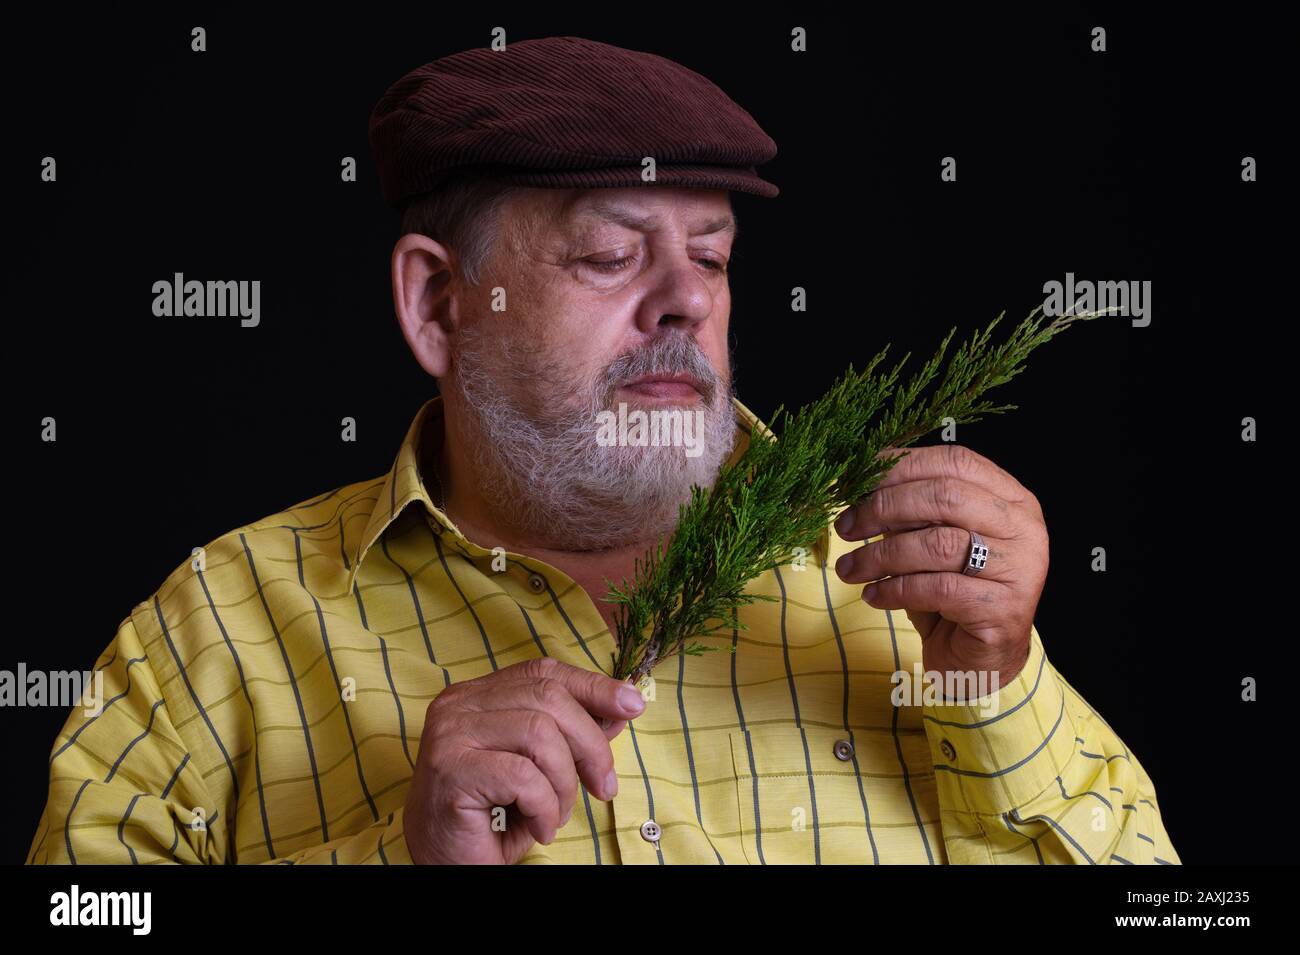 Bel ritratto a bassa chiave di un pensieroso caucasico bearded senior ammirando un piccolo ramo di albero di ginepro Foto Stock